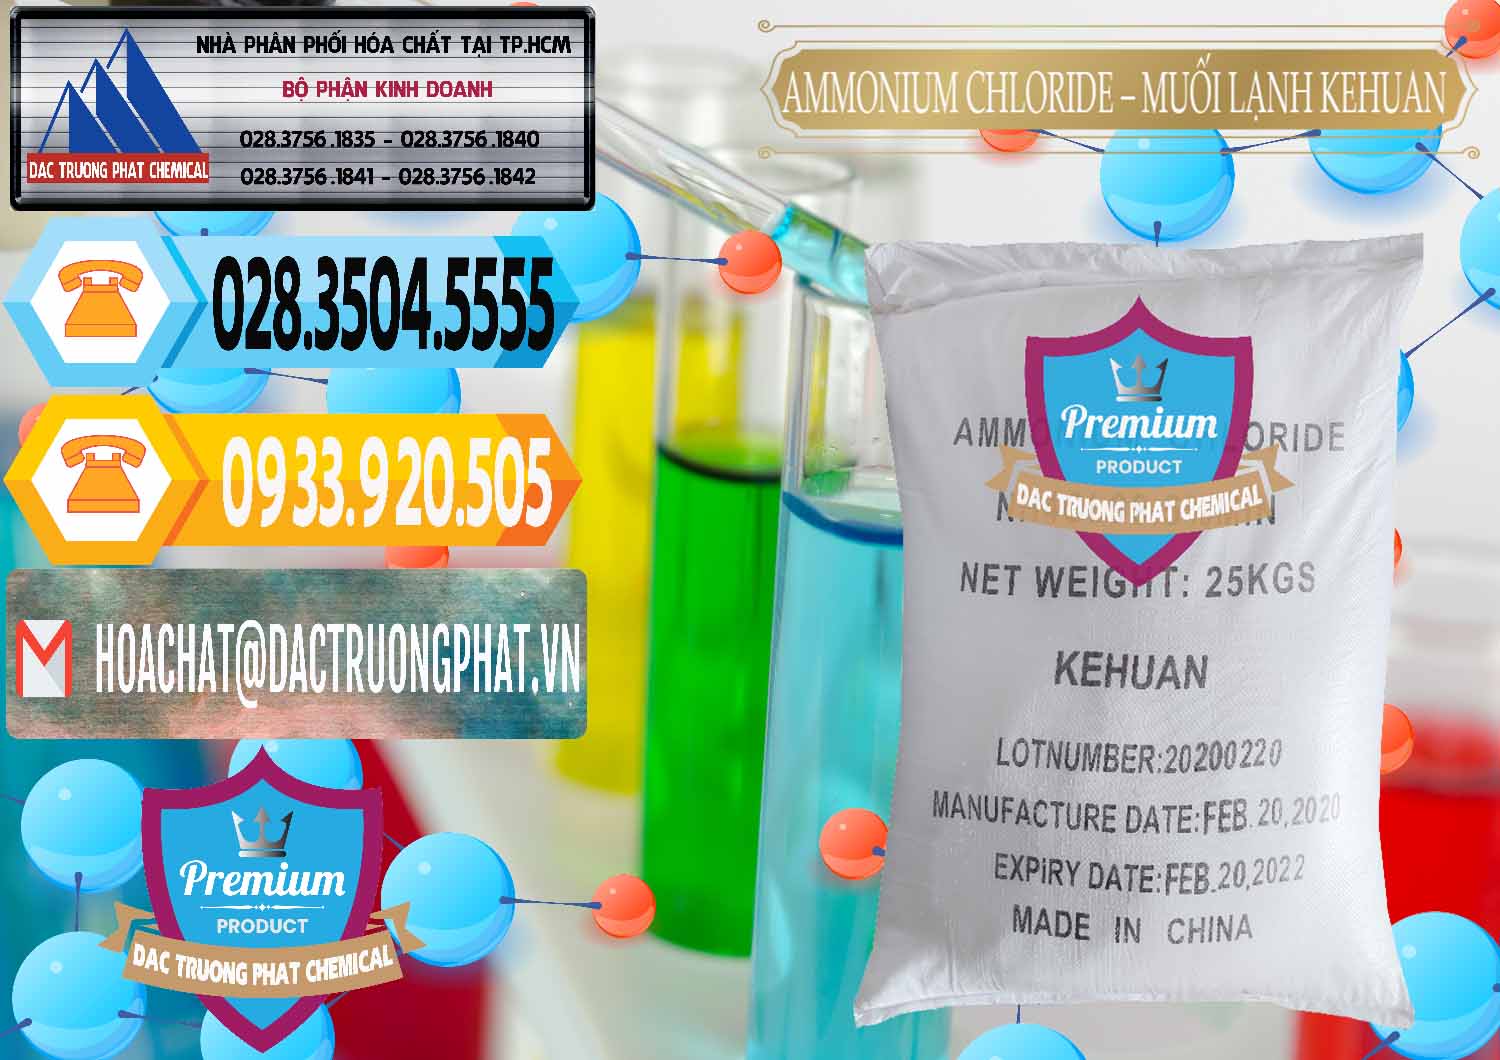 Nơi chuyên phân phối & bán Ammonium Chloride – NH4CL Muối Lạnh Kehuan Trung Quốc China - 0022 - Cty kinh doanh - cung cấp hóa chất tại TP.HCM - hoachattayrua.net